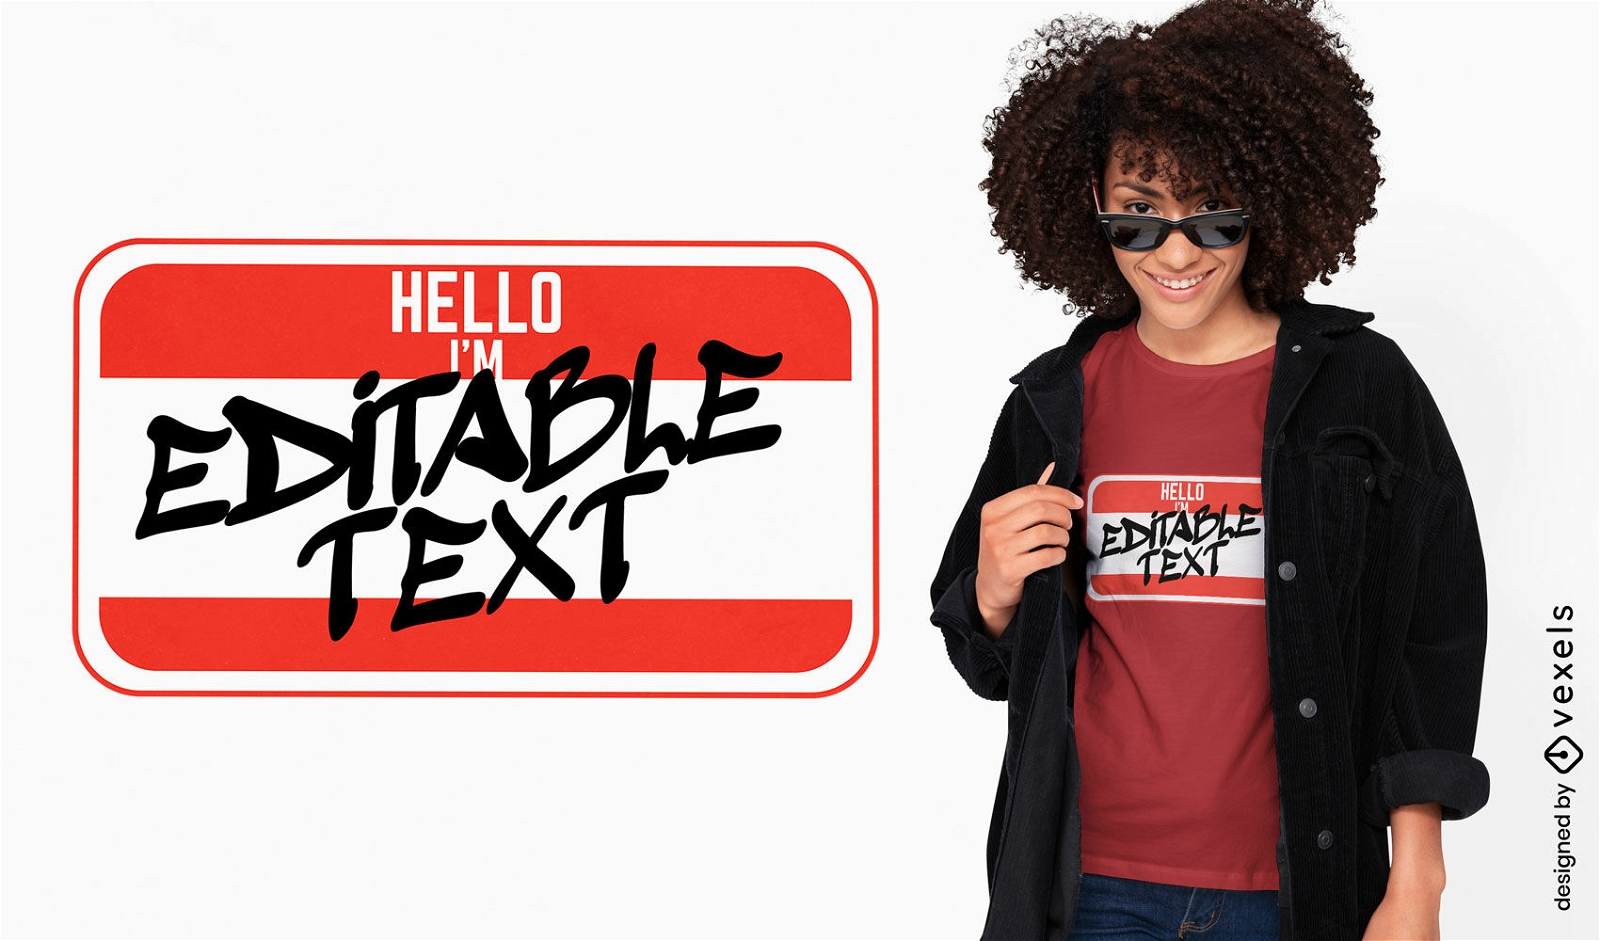 Editable text sticker t-shirt design